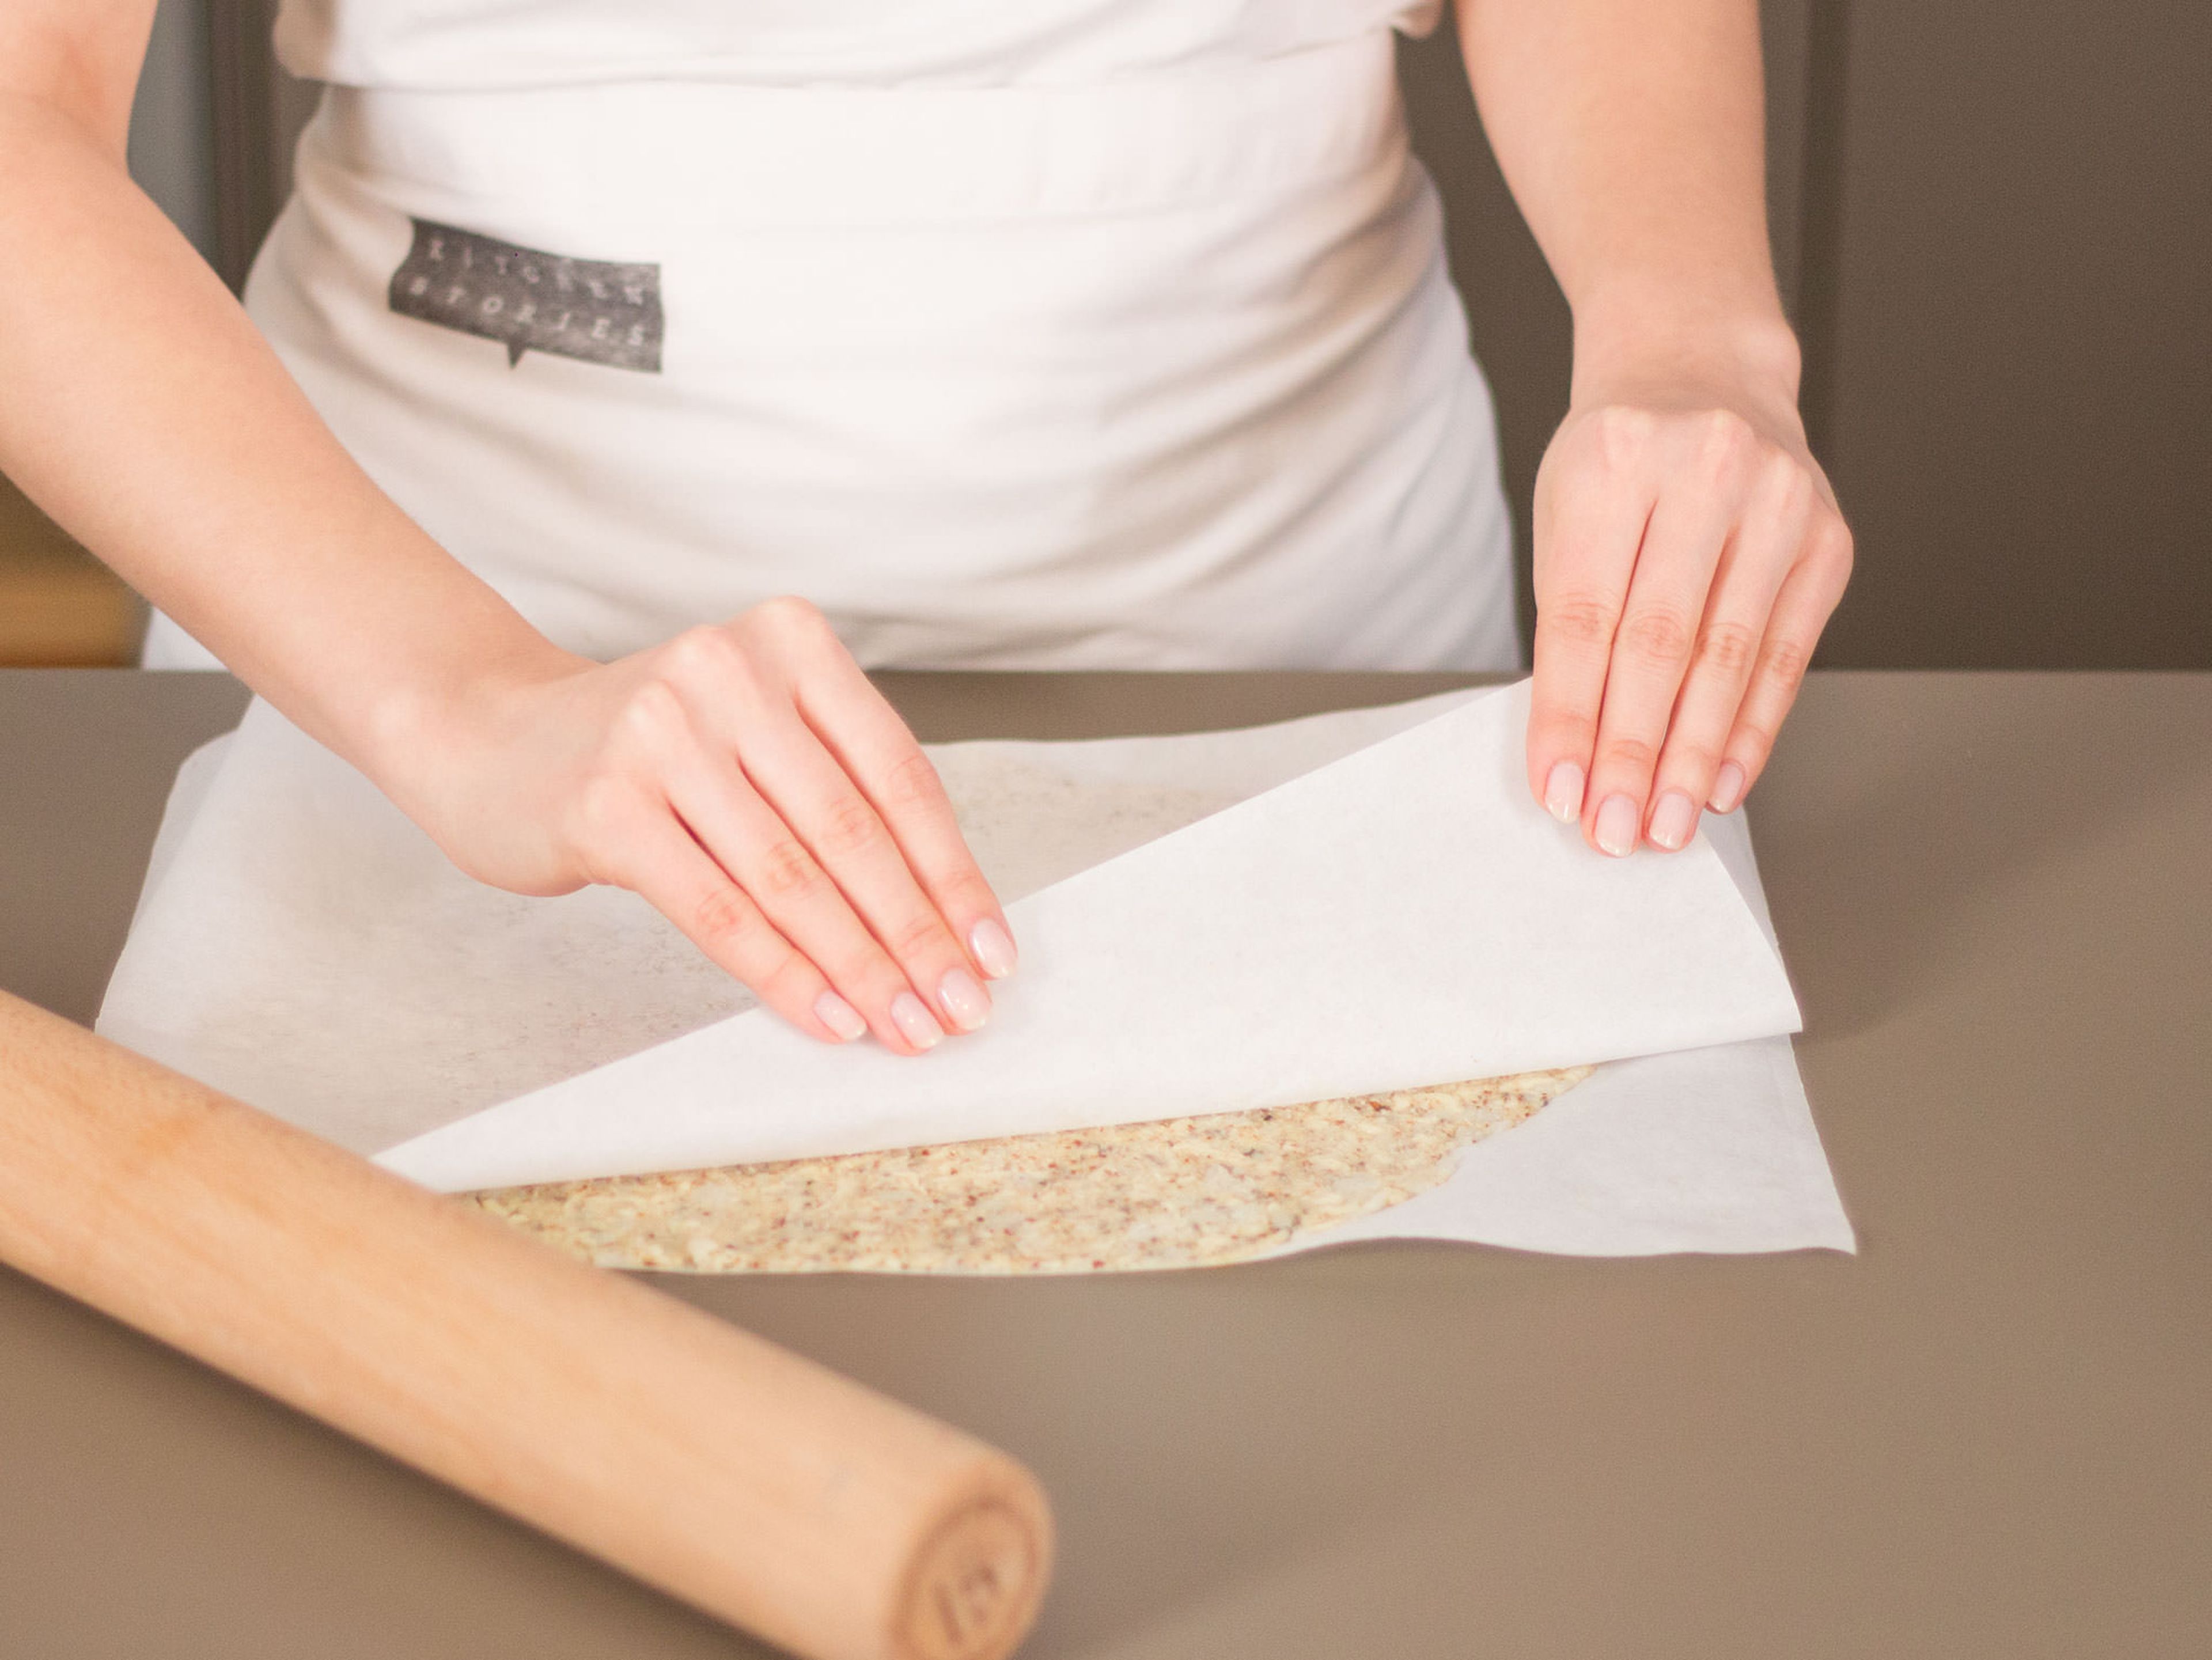 Teig zwischen zwei Bögen Backpapier geben und mit einem Nudelholz ausrollen. Oberen Bogen entfernen, Teig auf ein Backblech geben und im vorgeheizten Backofen bei 180°C ca. 15 – 20 Min. backen.